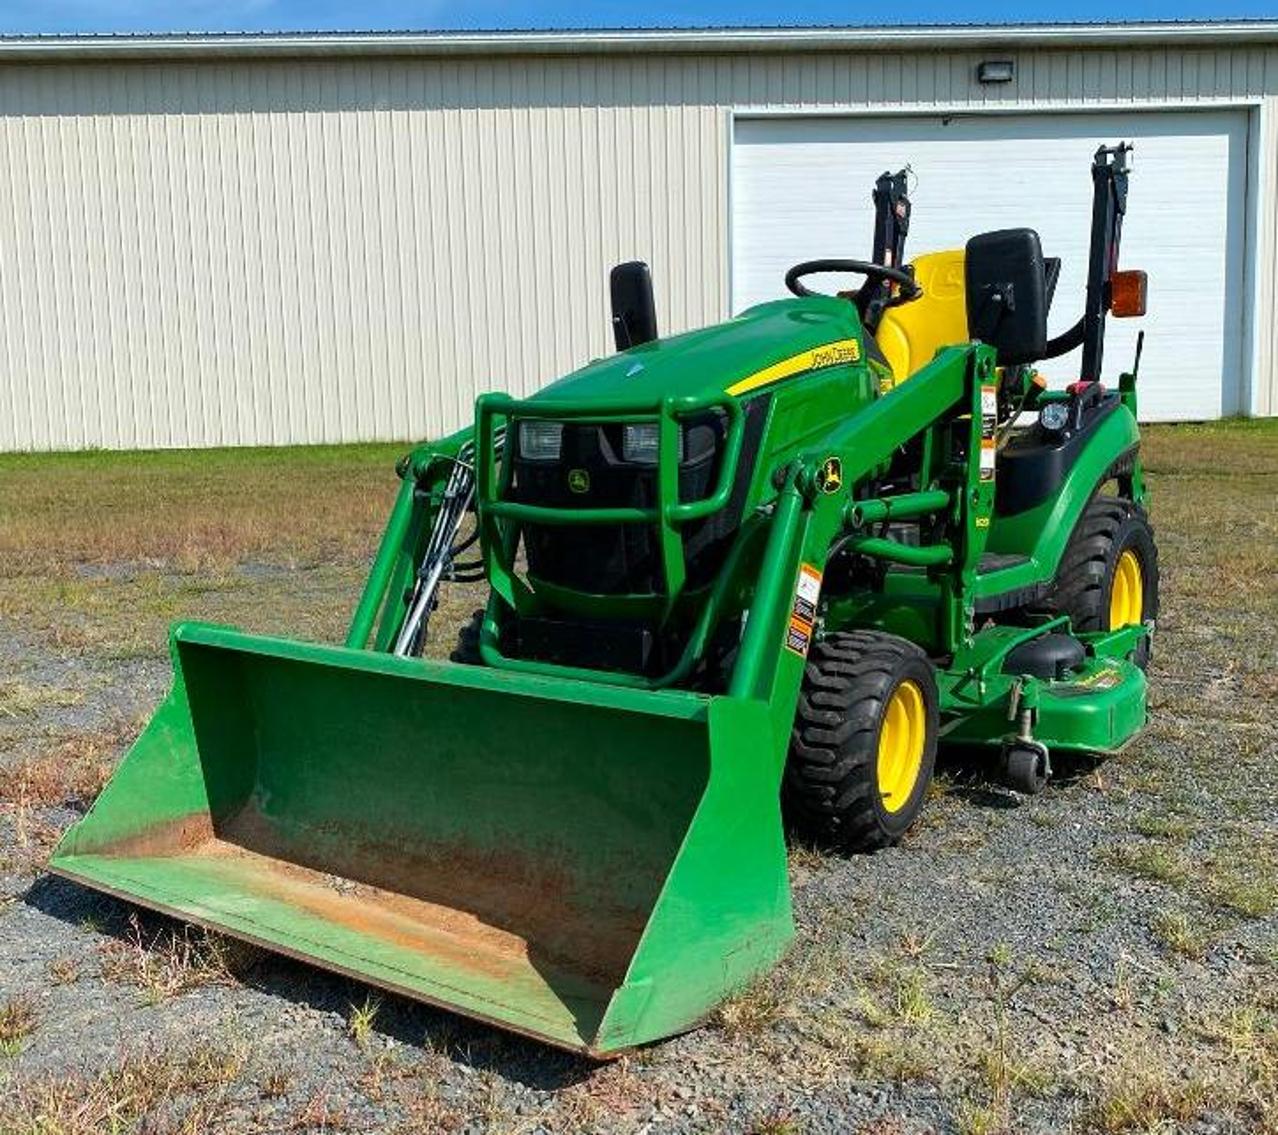 John Deere 1026R Garden Tractor & Attachments